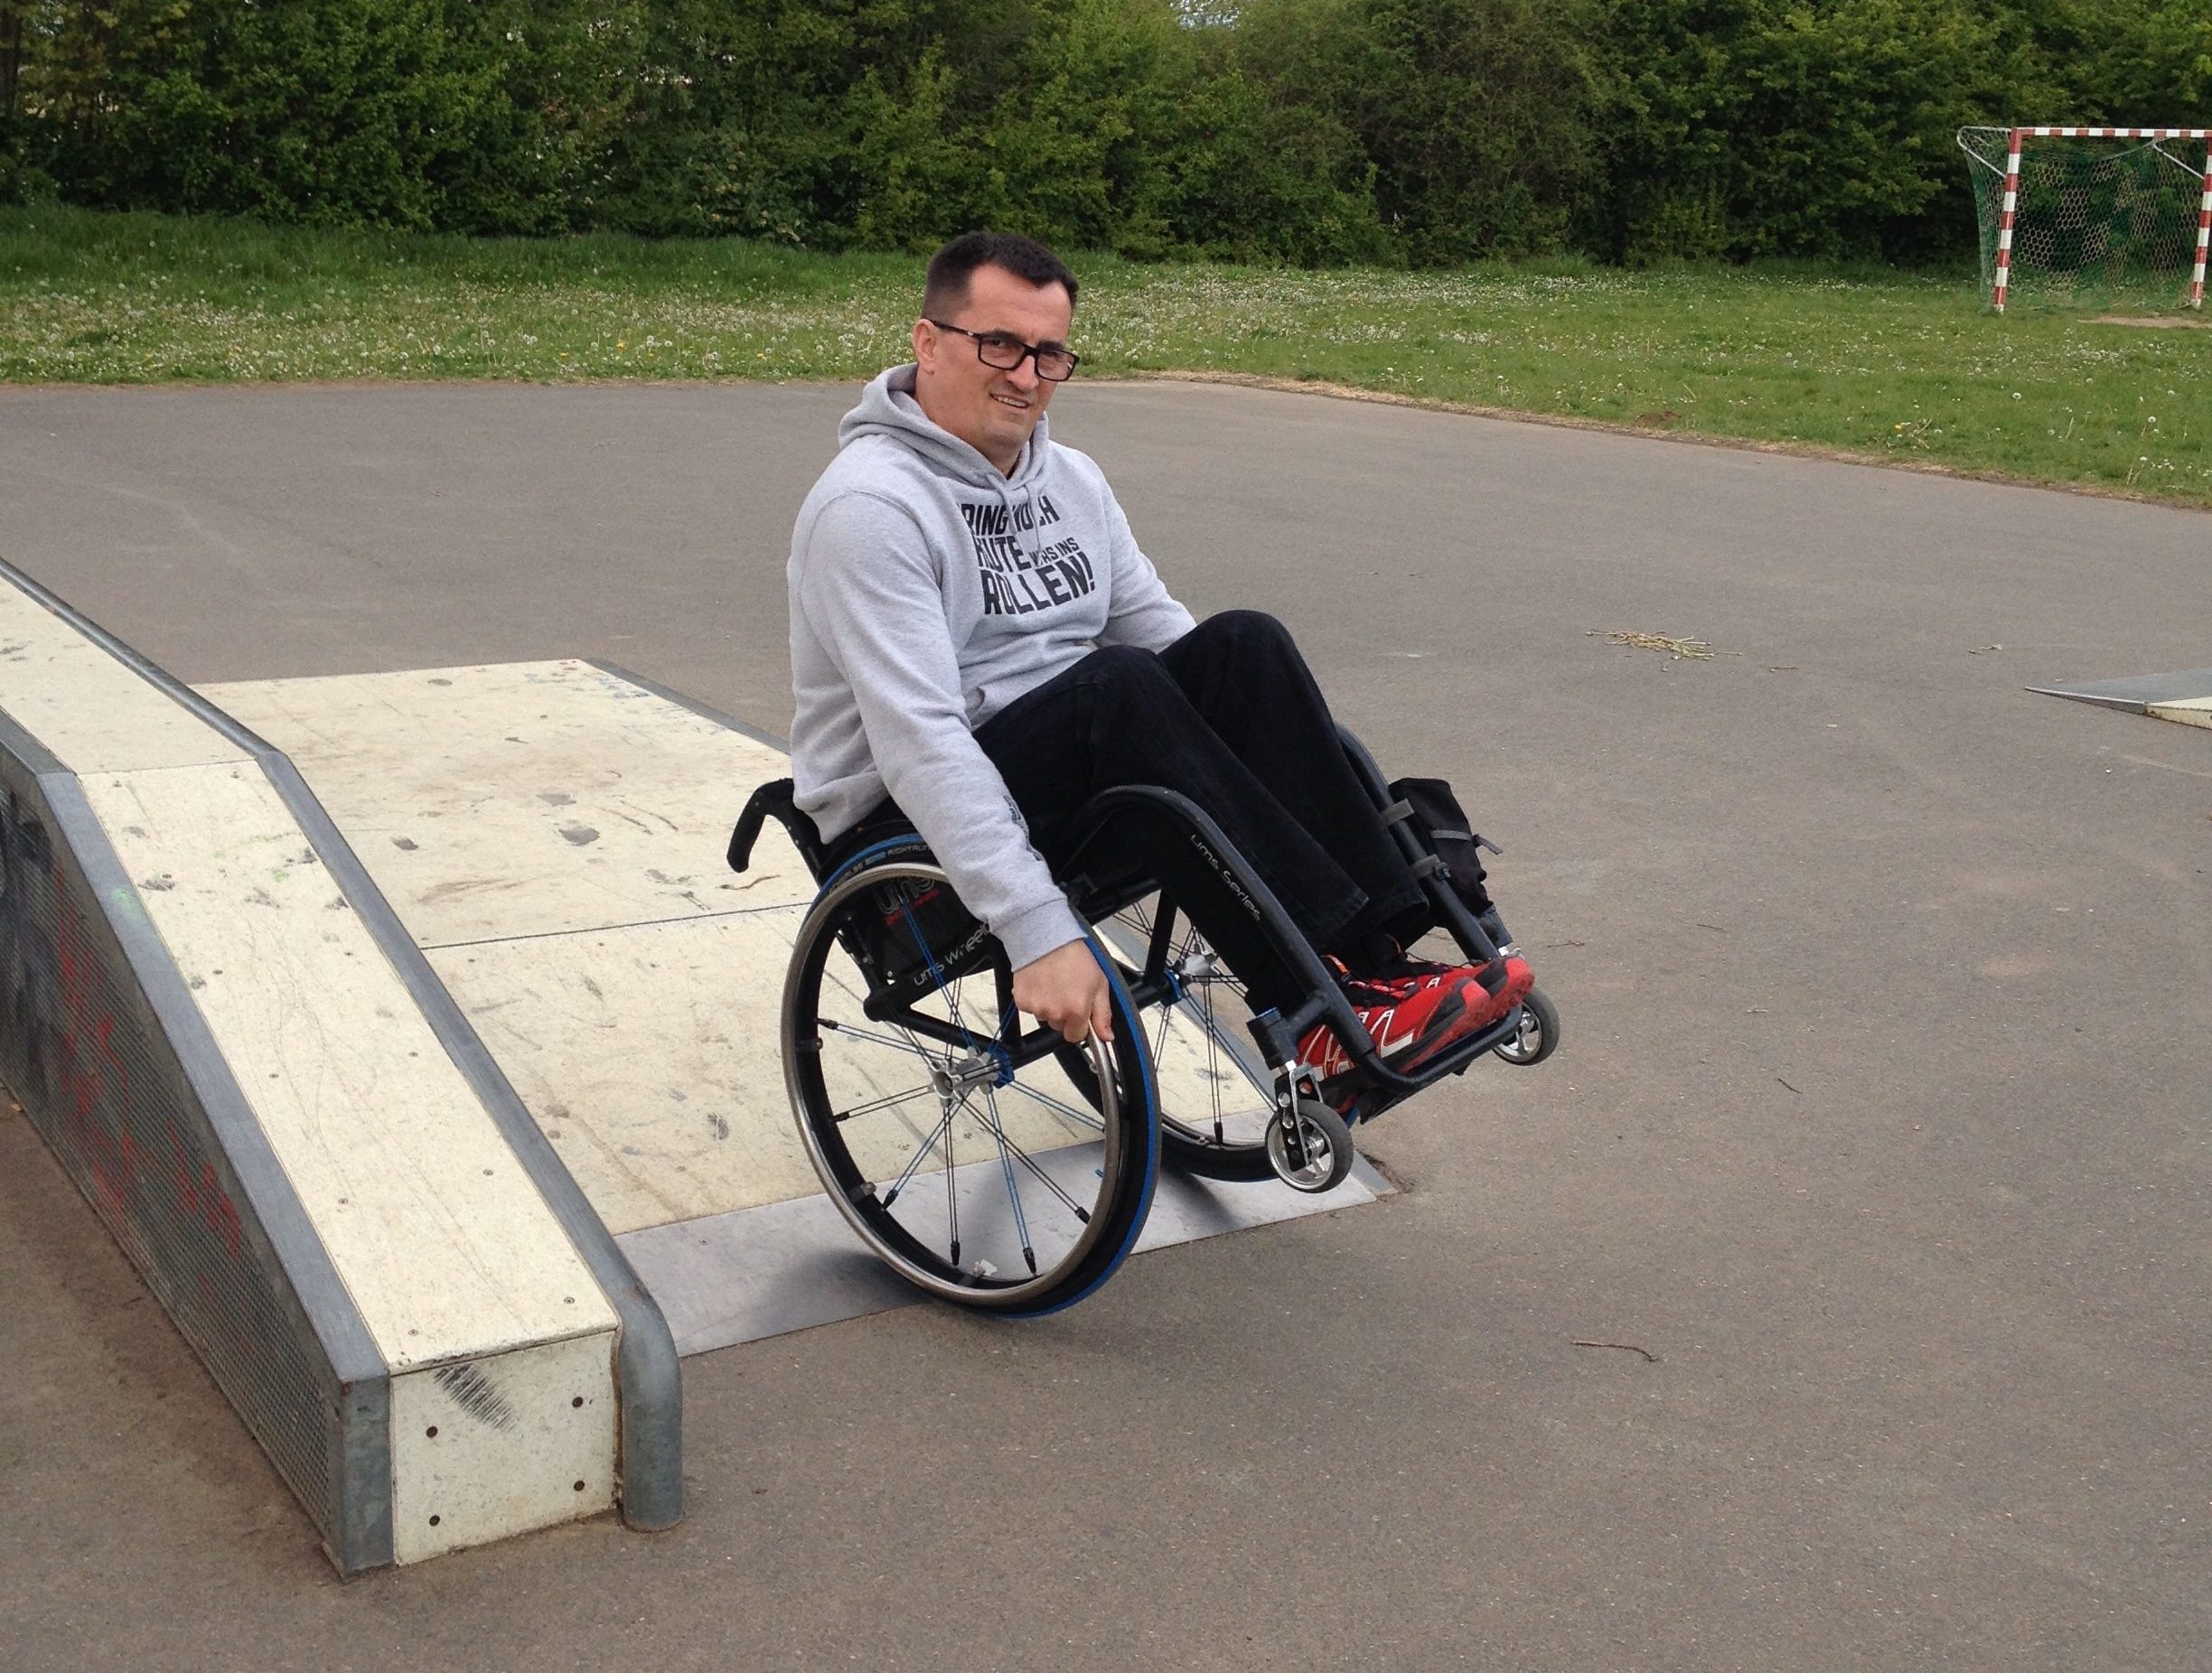 Foto von Jörg Köhler, er sitzt im Rollstuhl und ist in einem Skatepark